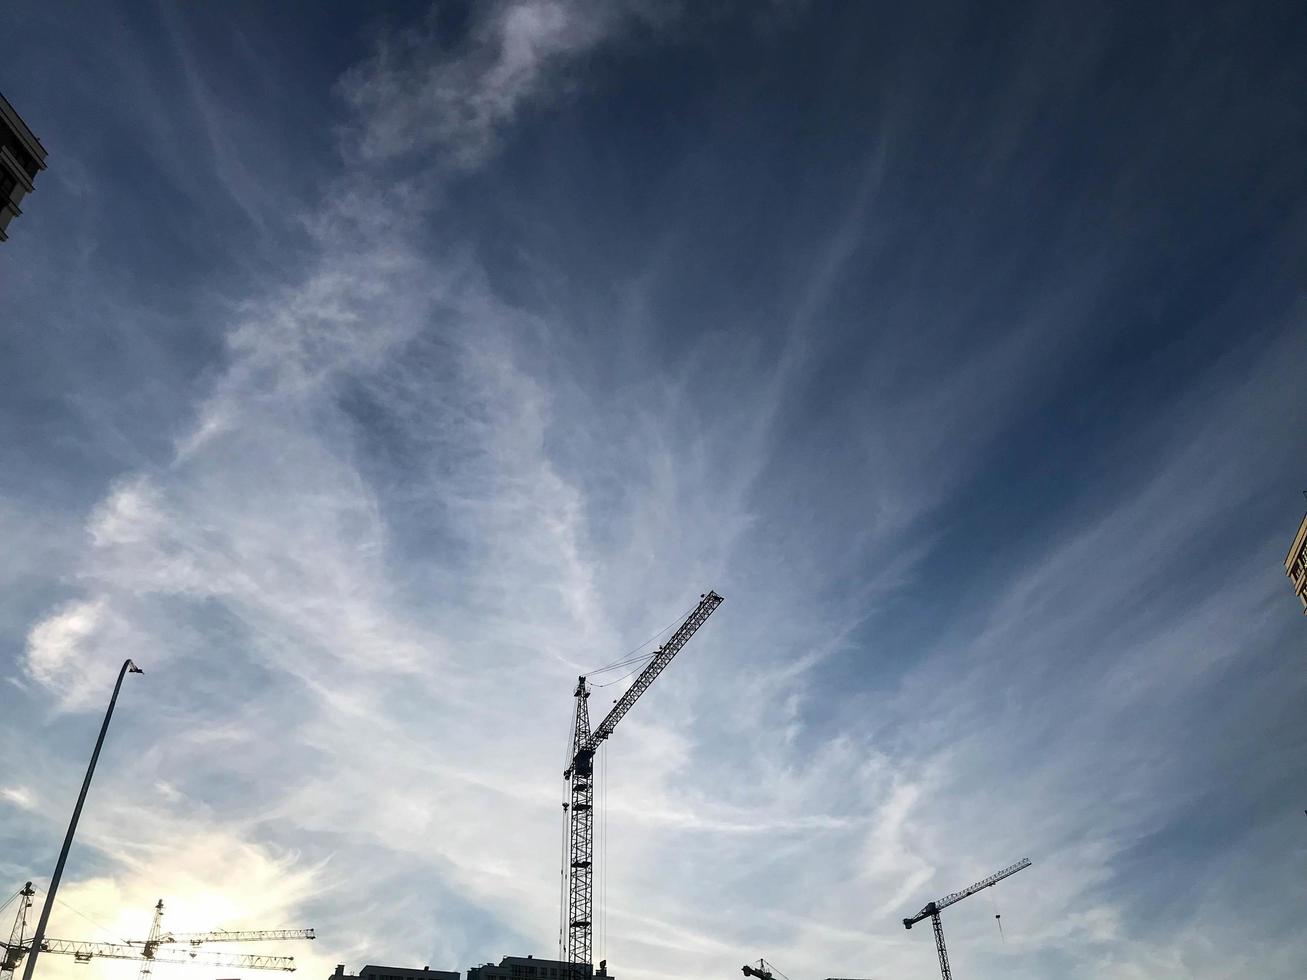 bouw kranen staan tegen de achtergrond van een bewolkt blauw lucht. bouw plaats, huis gebouw apparatuur. Bouwers rechtop staan hoog huizen van beton blokken foto